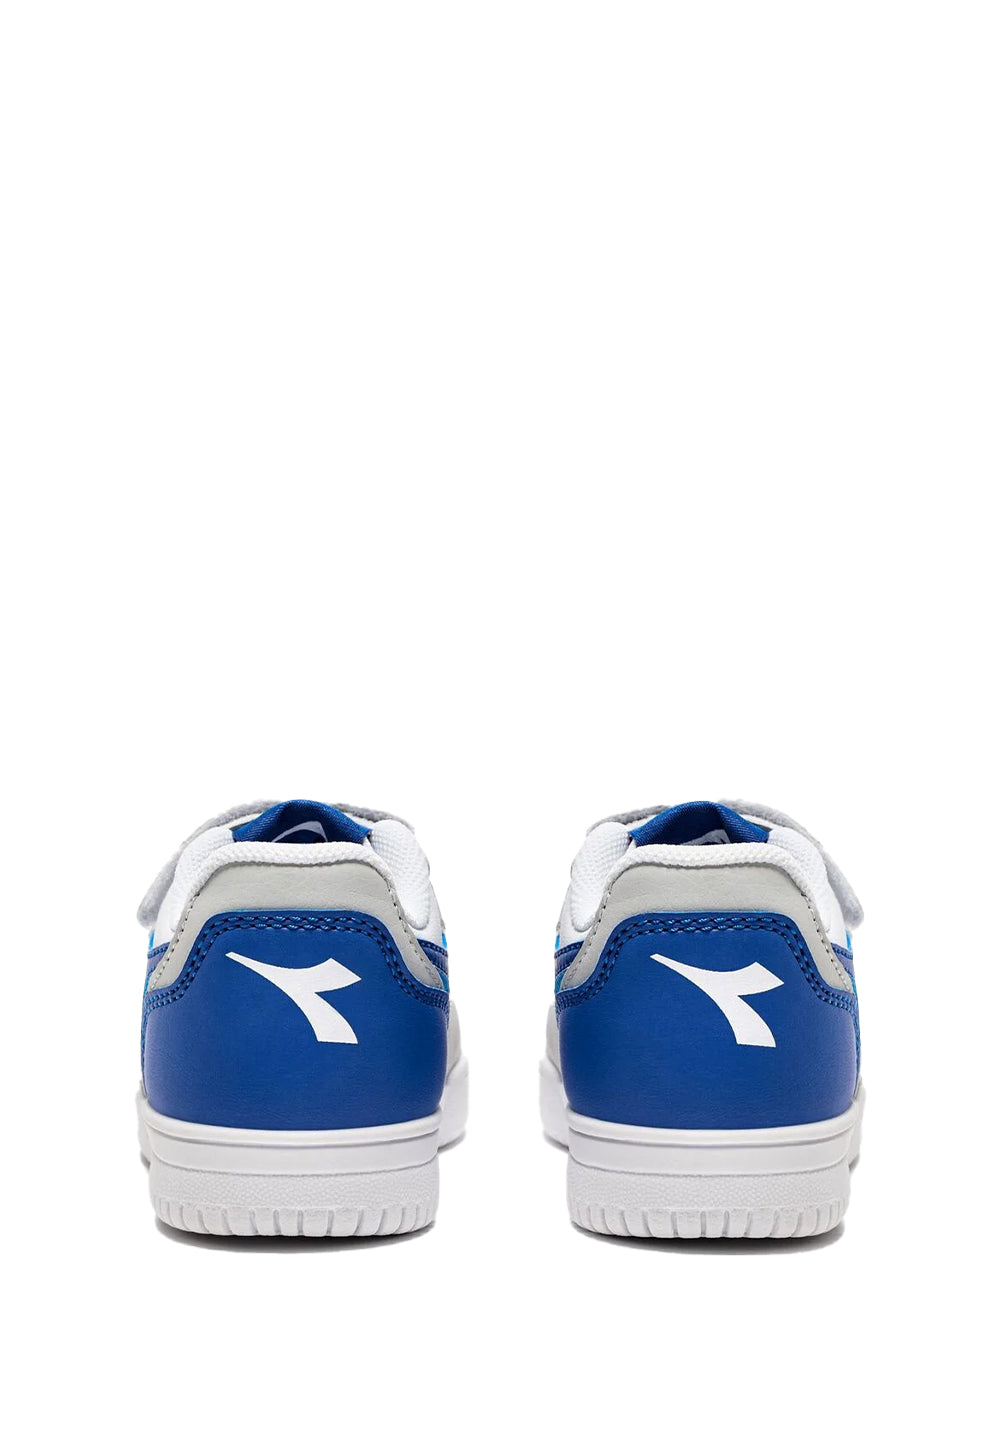 Weiß-blaue Schuhe für Kinder